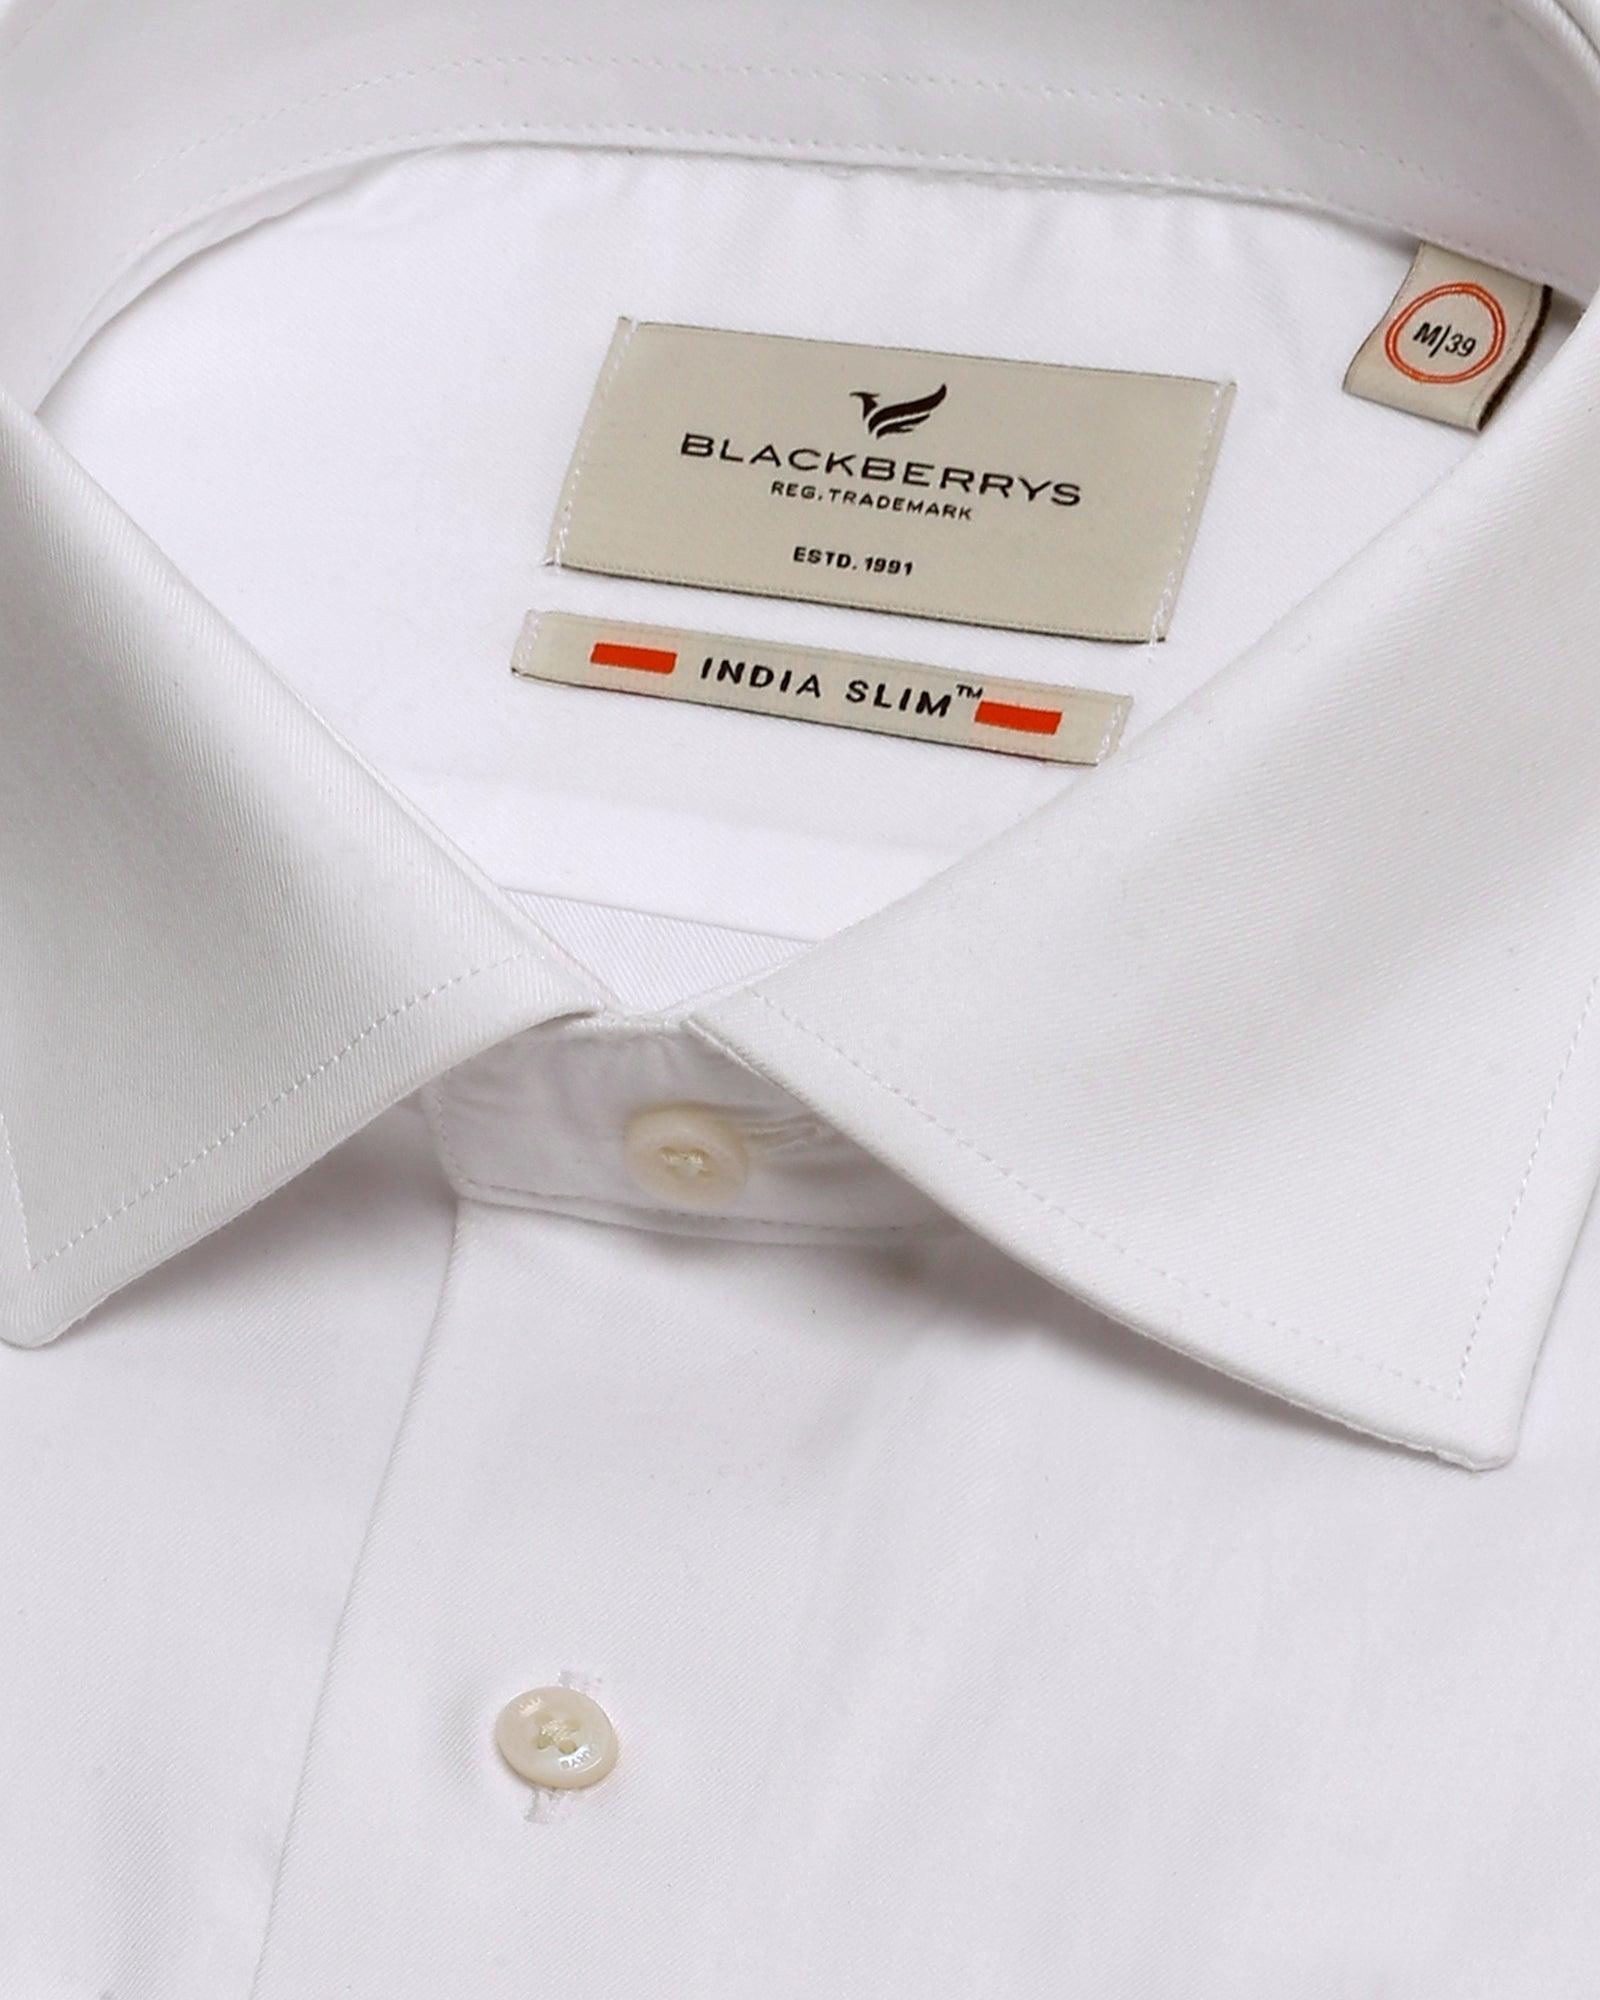 Formal White Solid Shirt - Retro